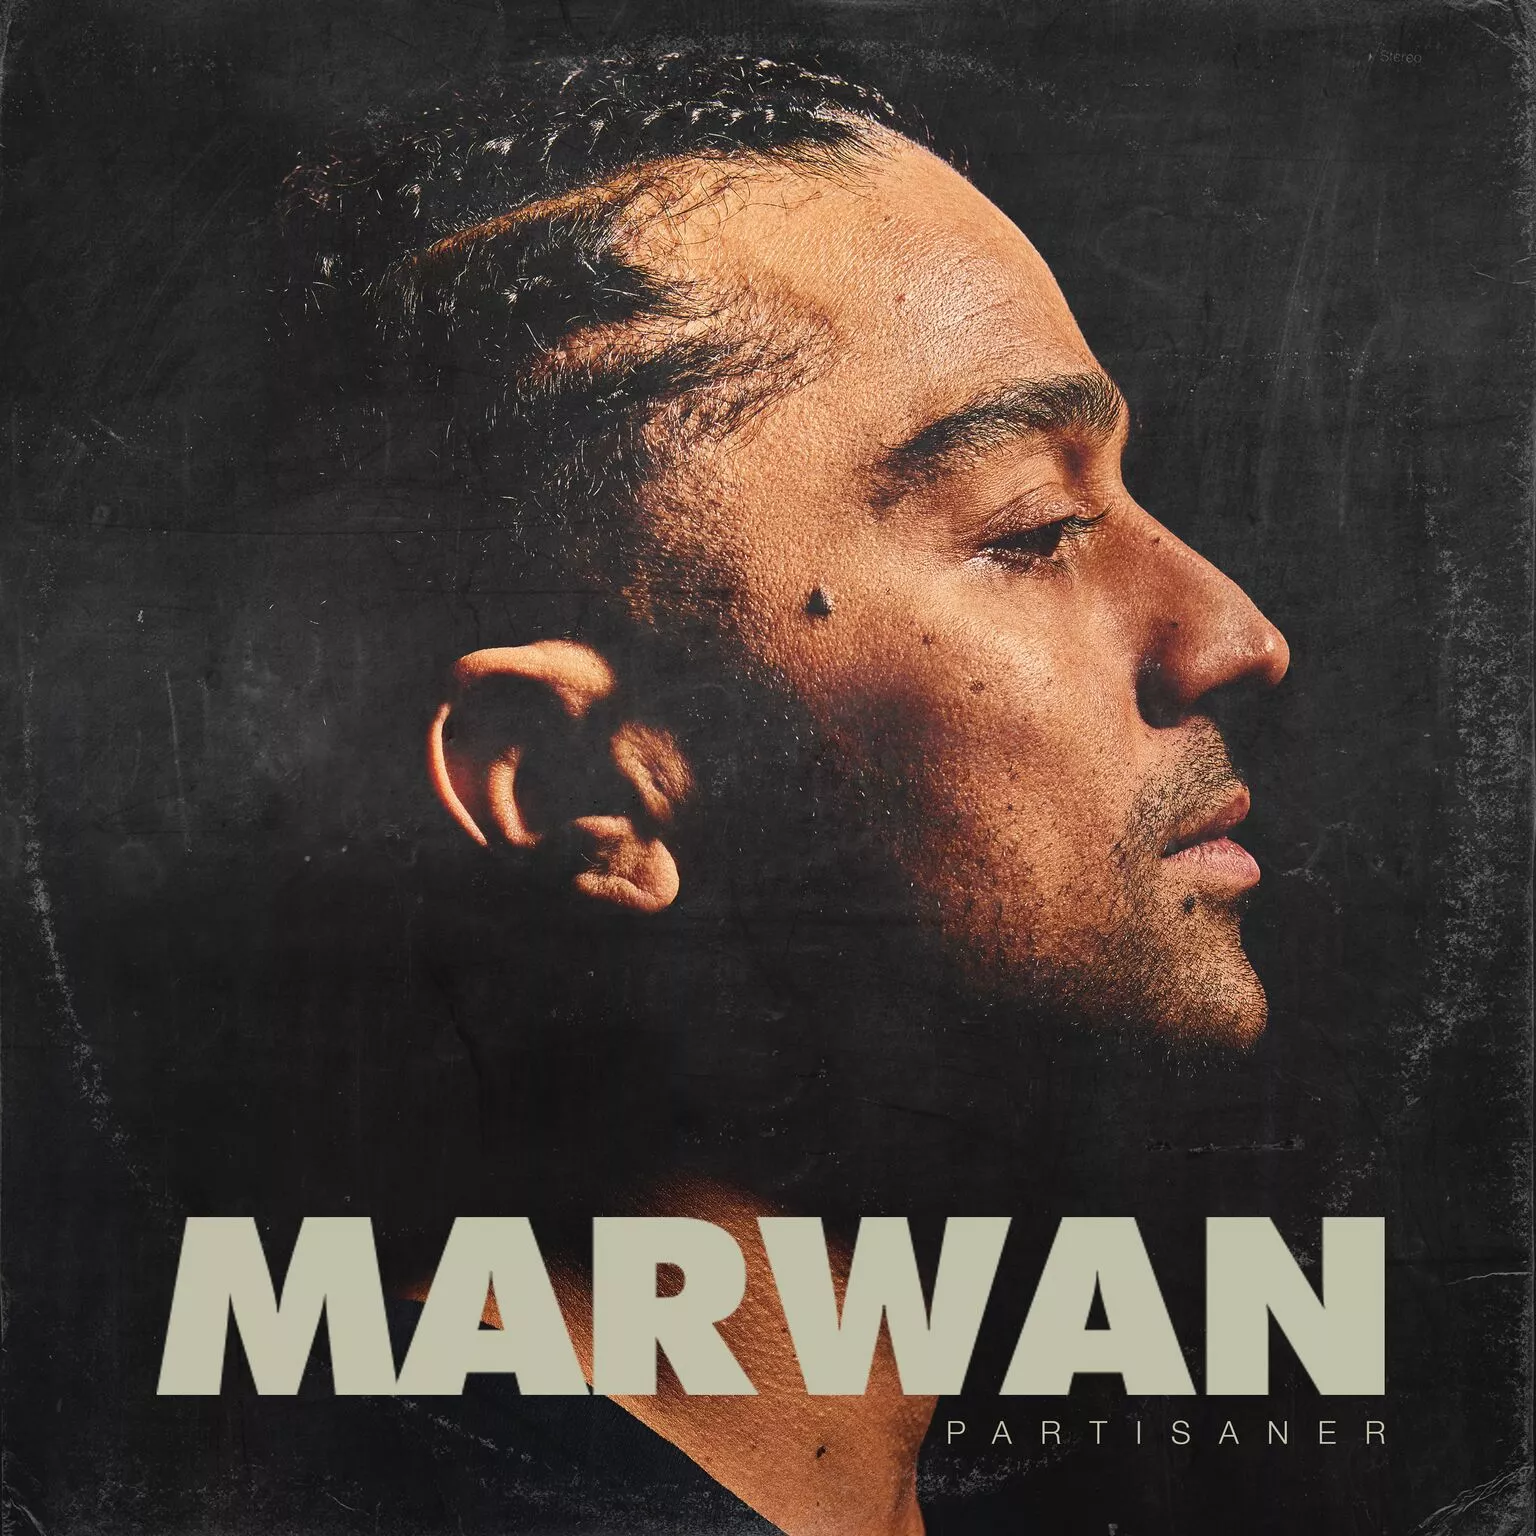 Partisaner - Marwan